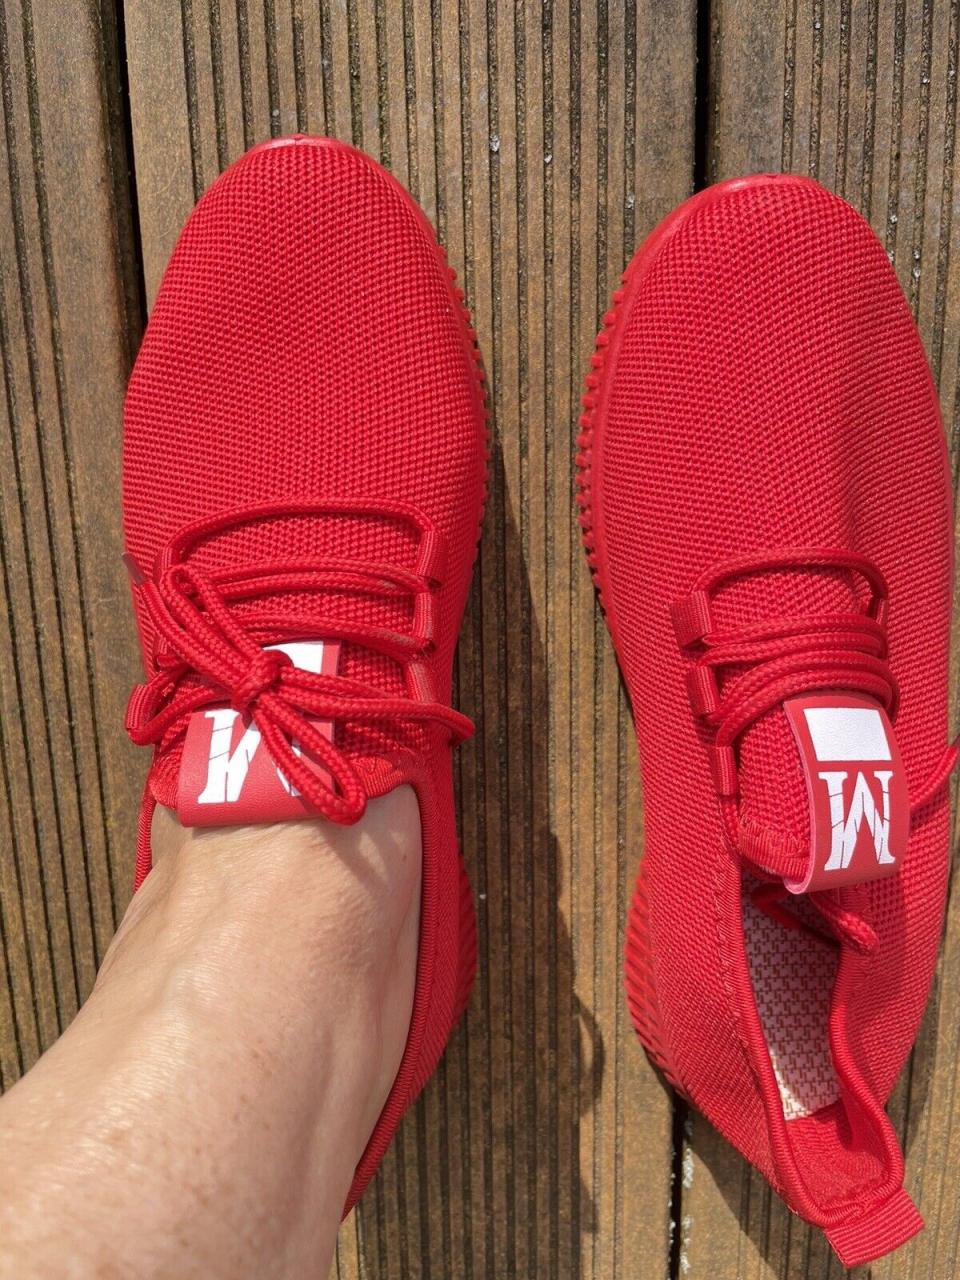 Neue Rote Sneaker Turnschuhe , Bequem, Leicht 39 | eBay